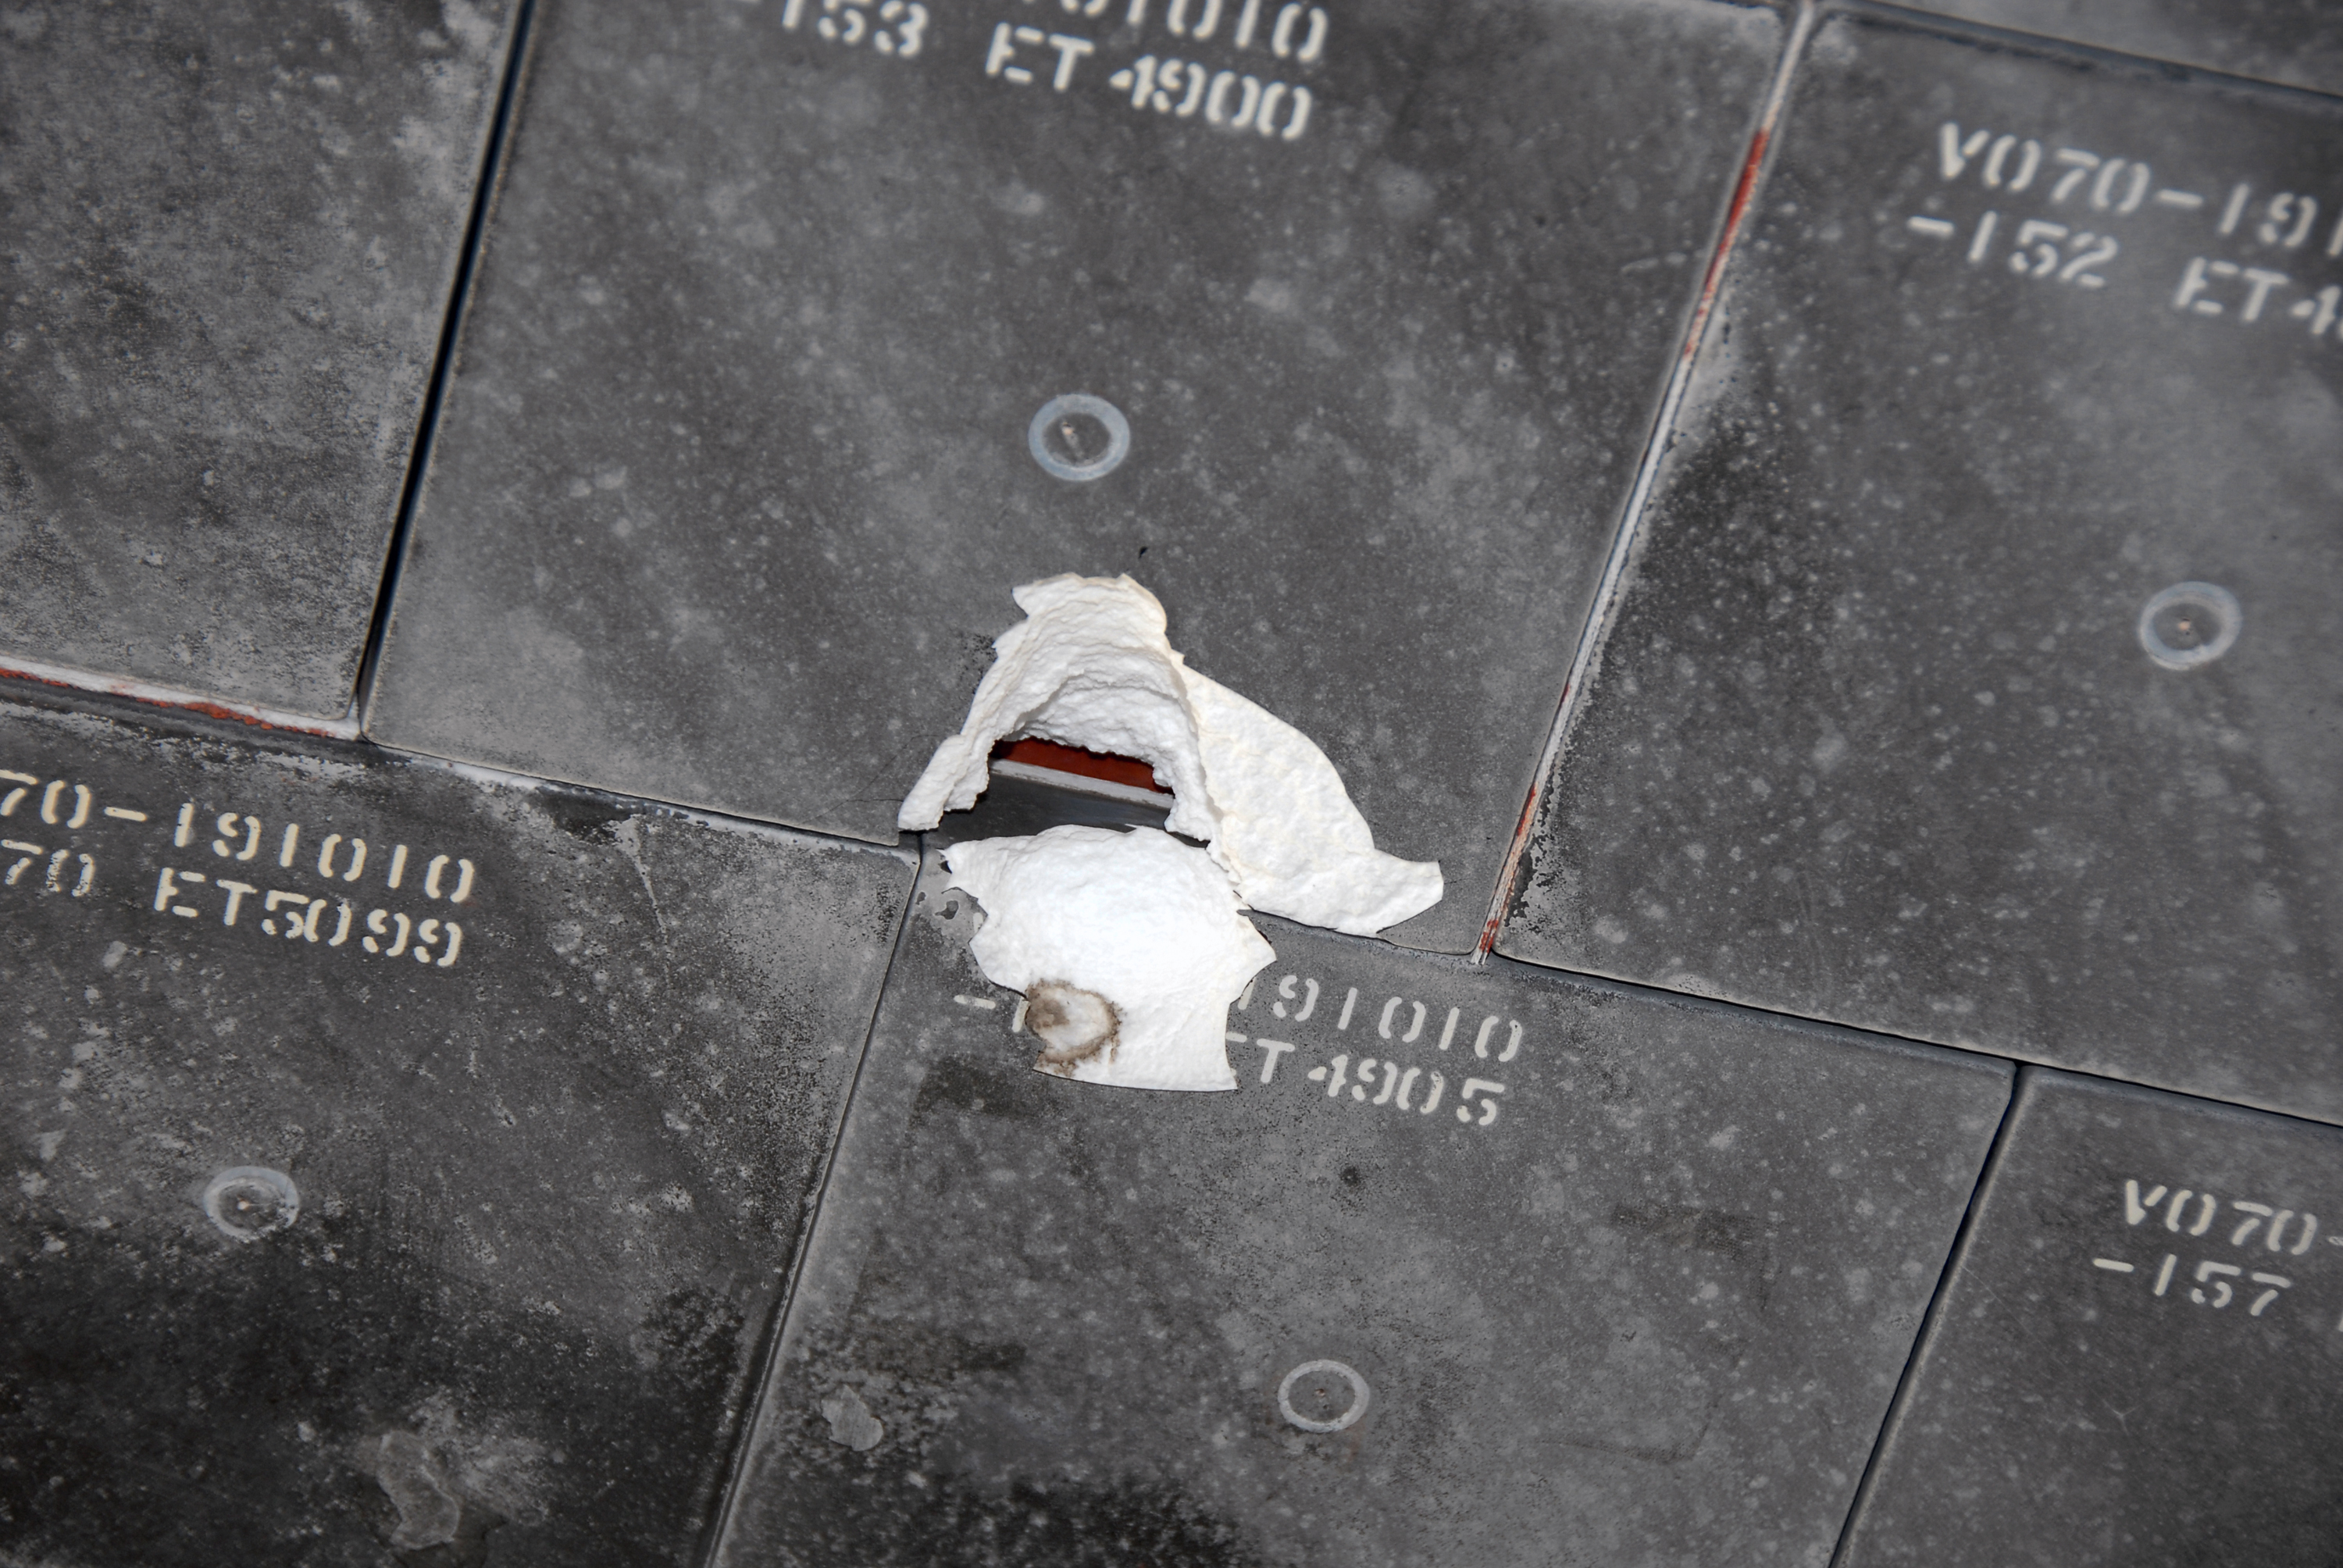 STS-118 damaged tile